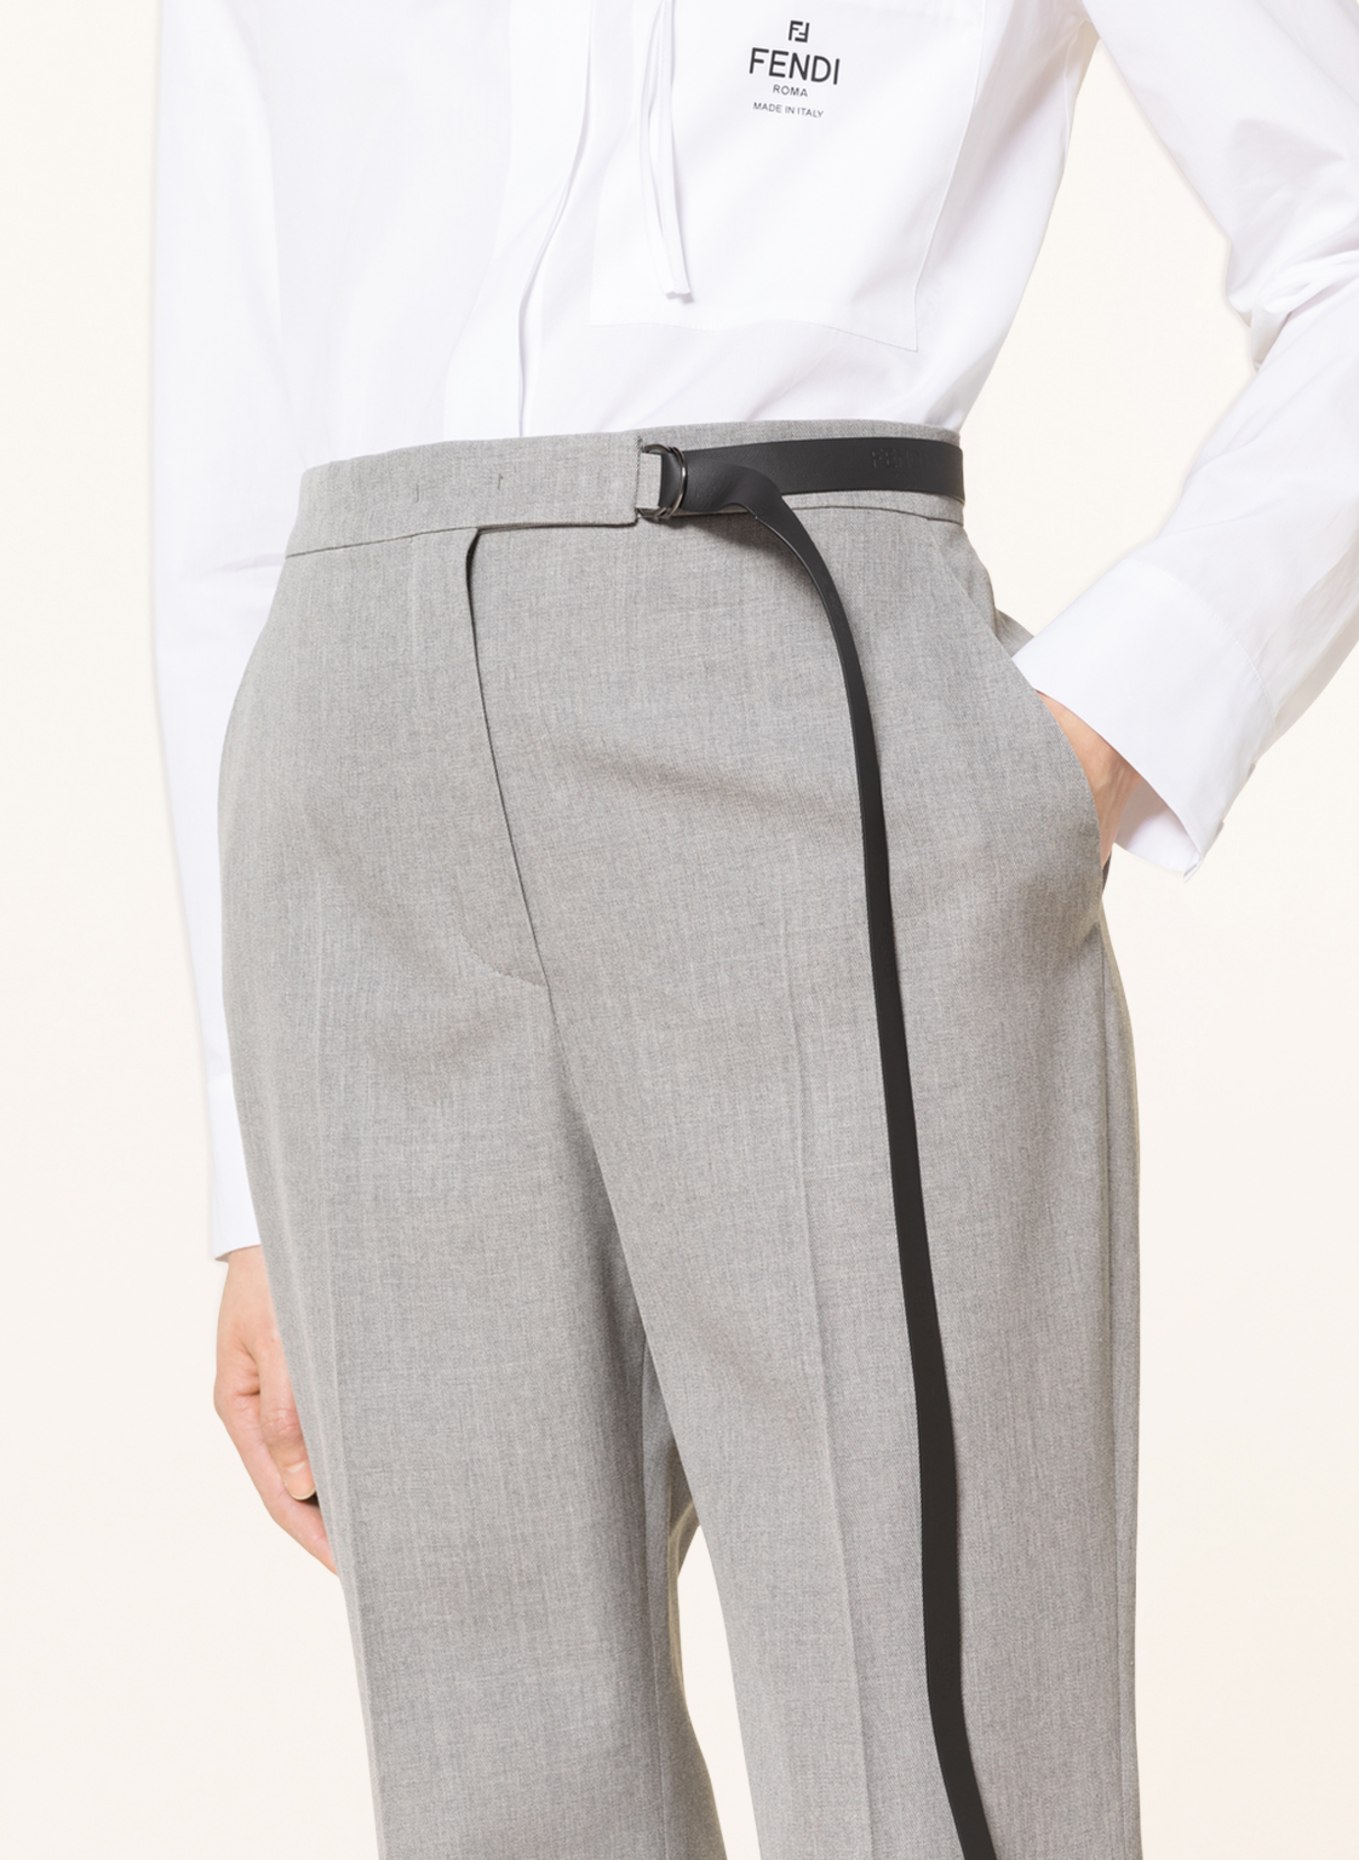 FENDI Pants, Color: GRAY (Image 5)